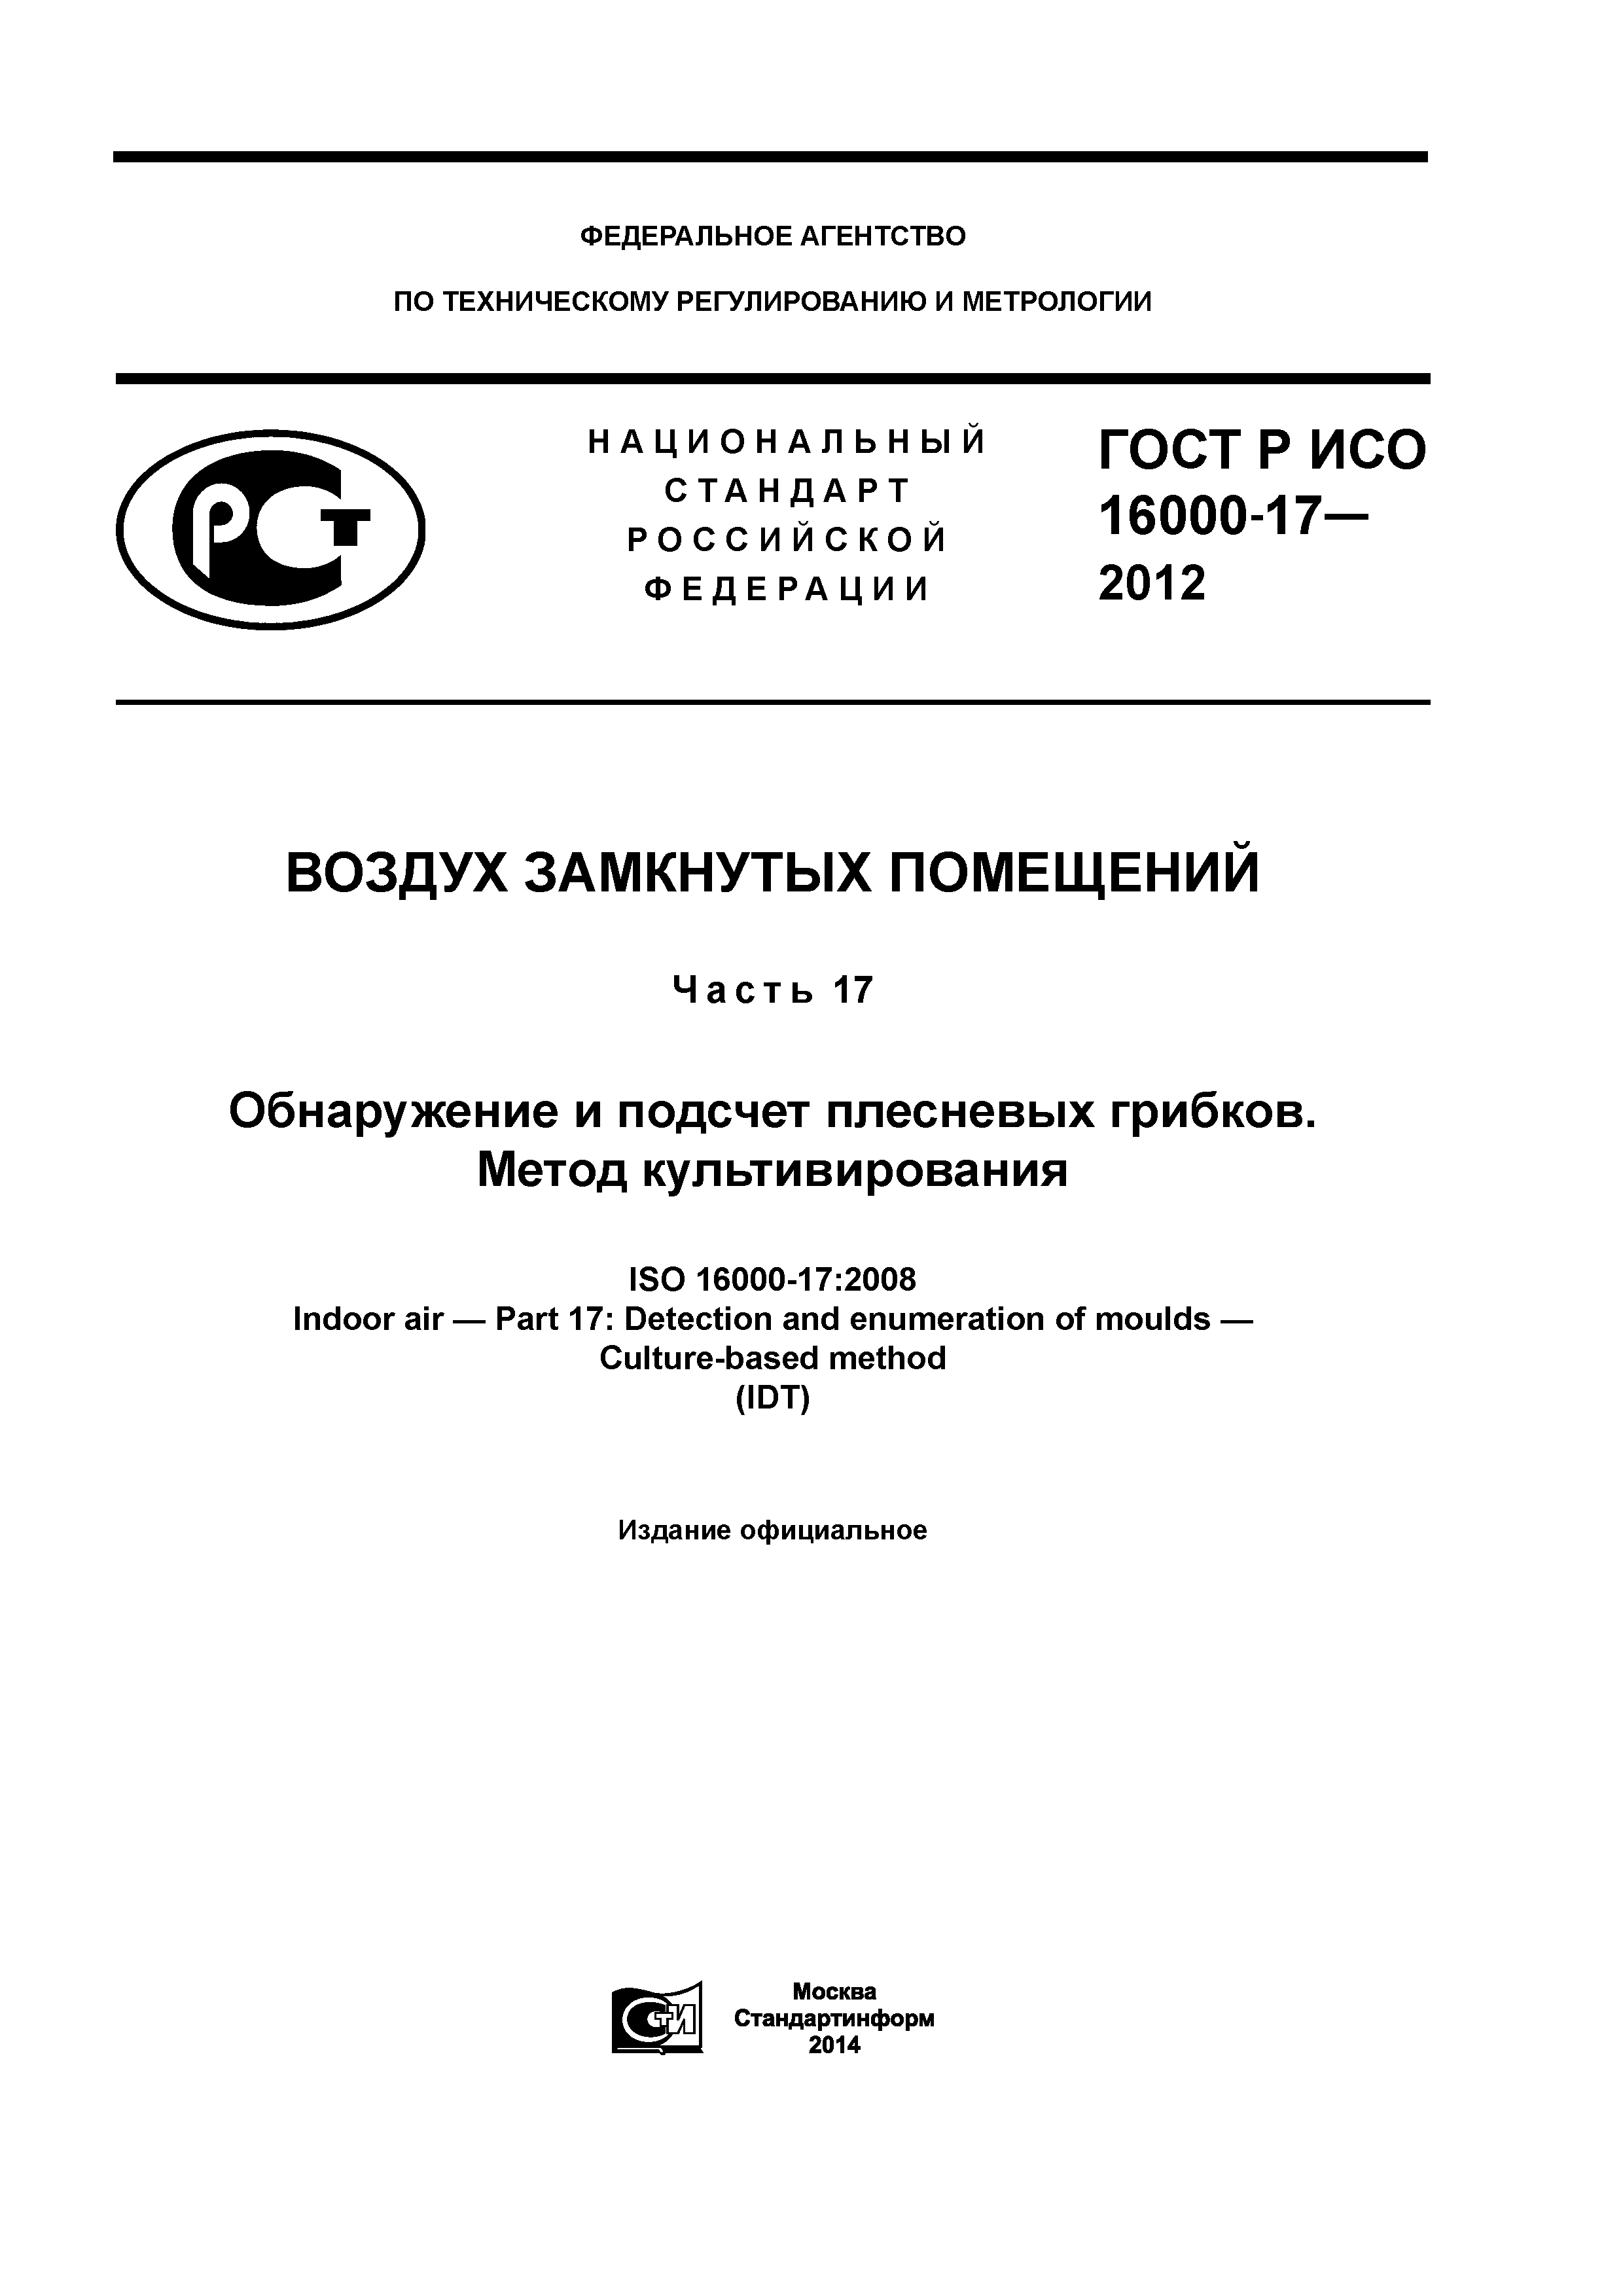 ГОСТ Р ИСО 16000-17-2012